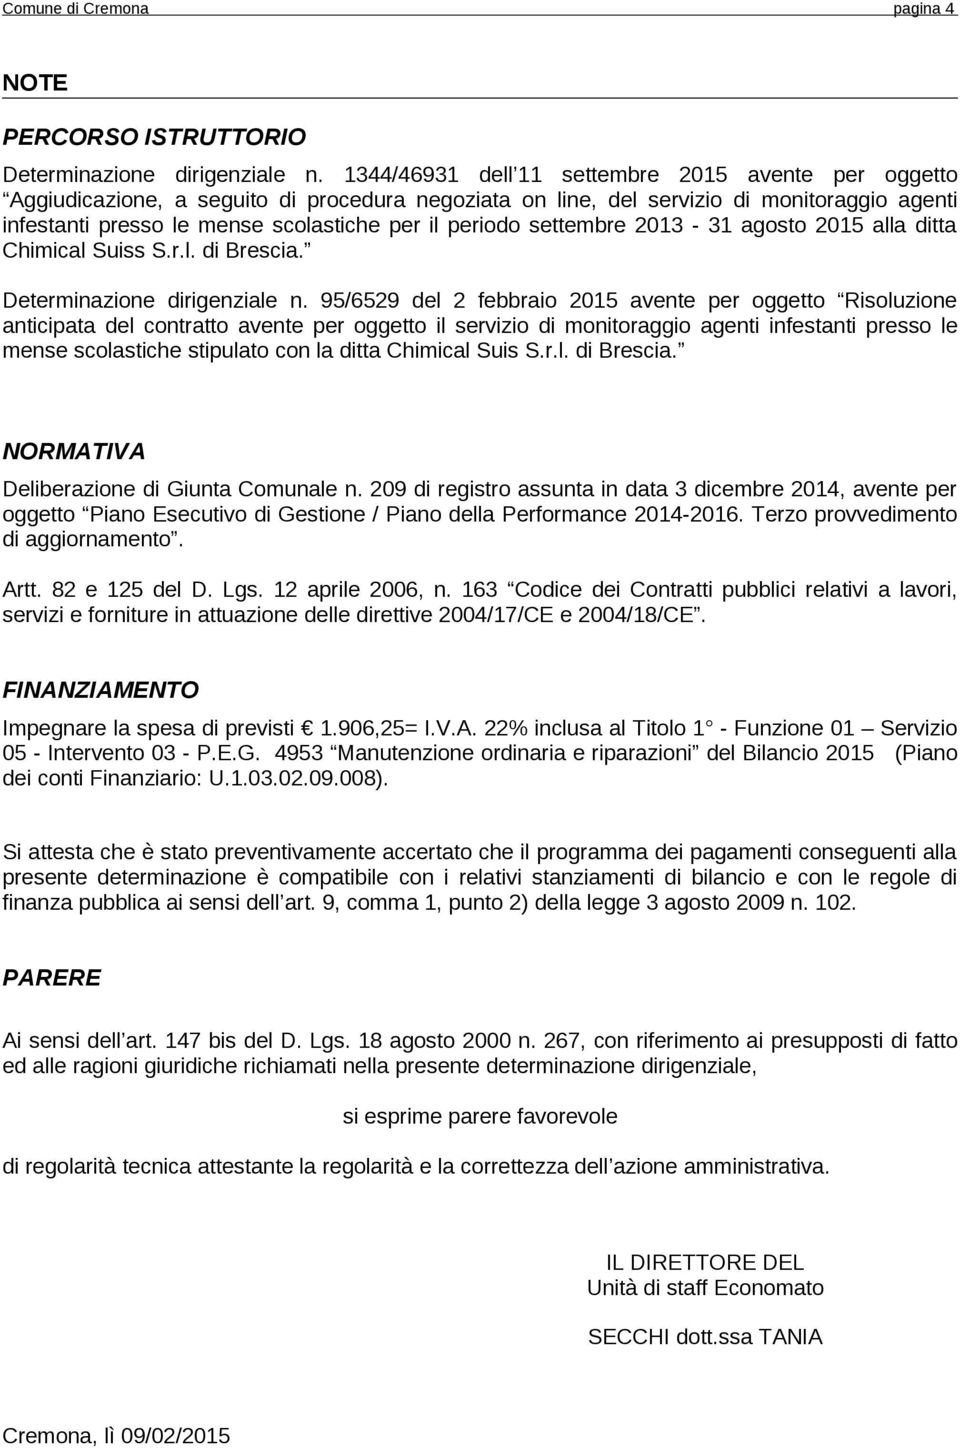 periodo settembre 2013-31 agosto 2015 alla ditta Chimical Suiss S.r.l. di Brescia. Determinazione dirigenziale n.